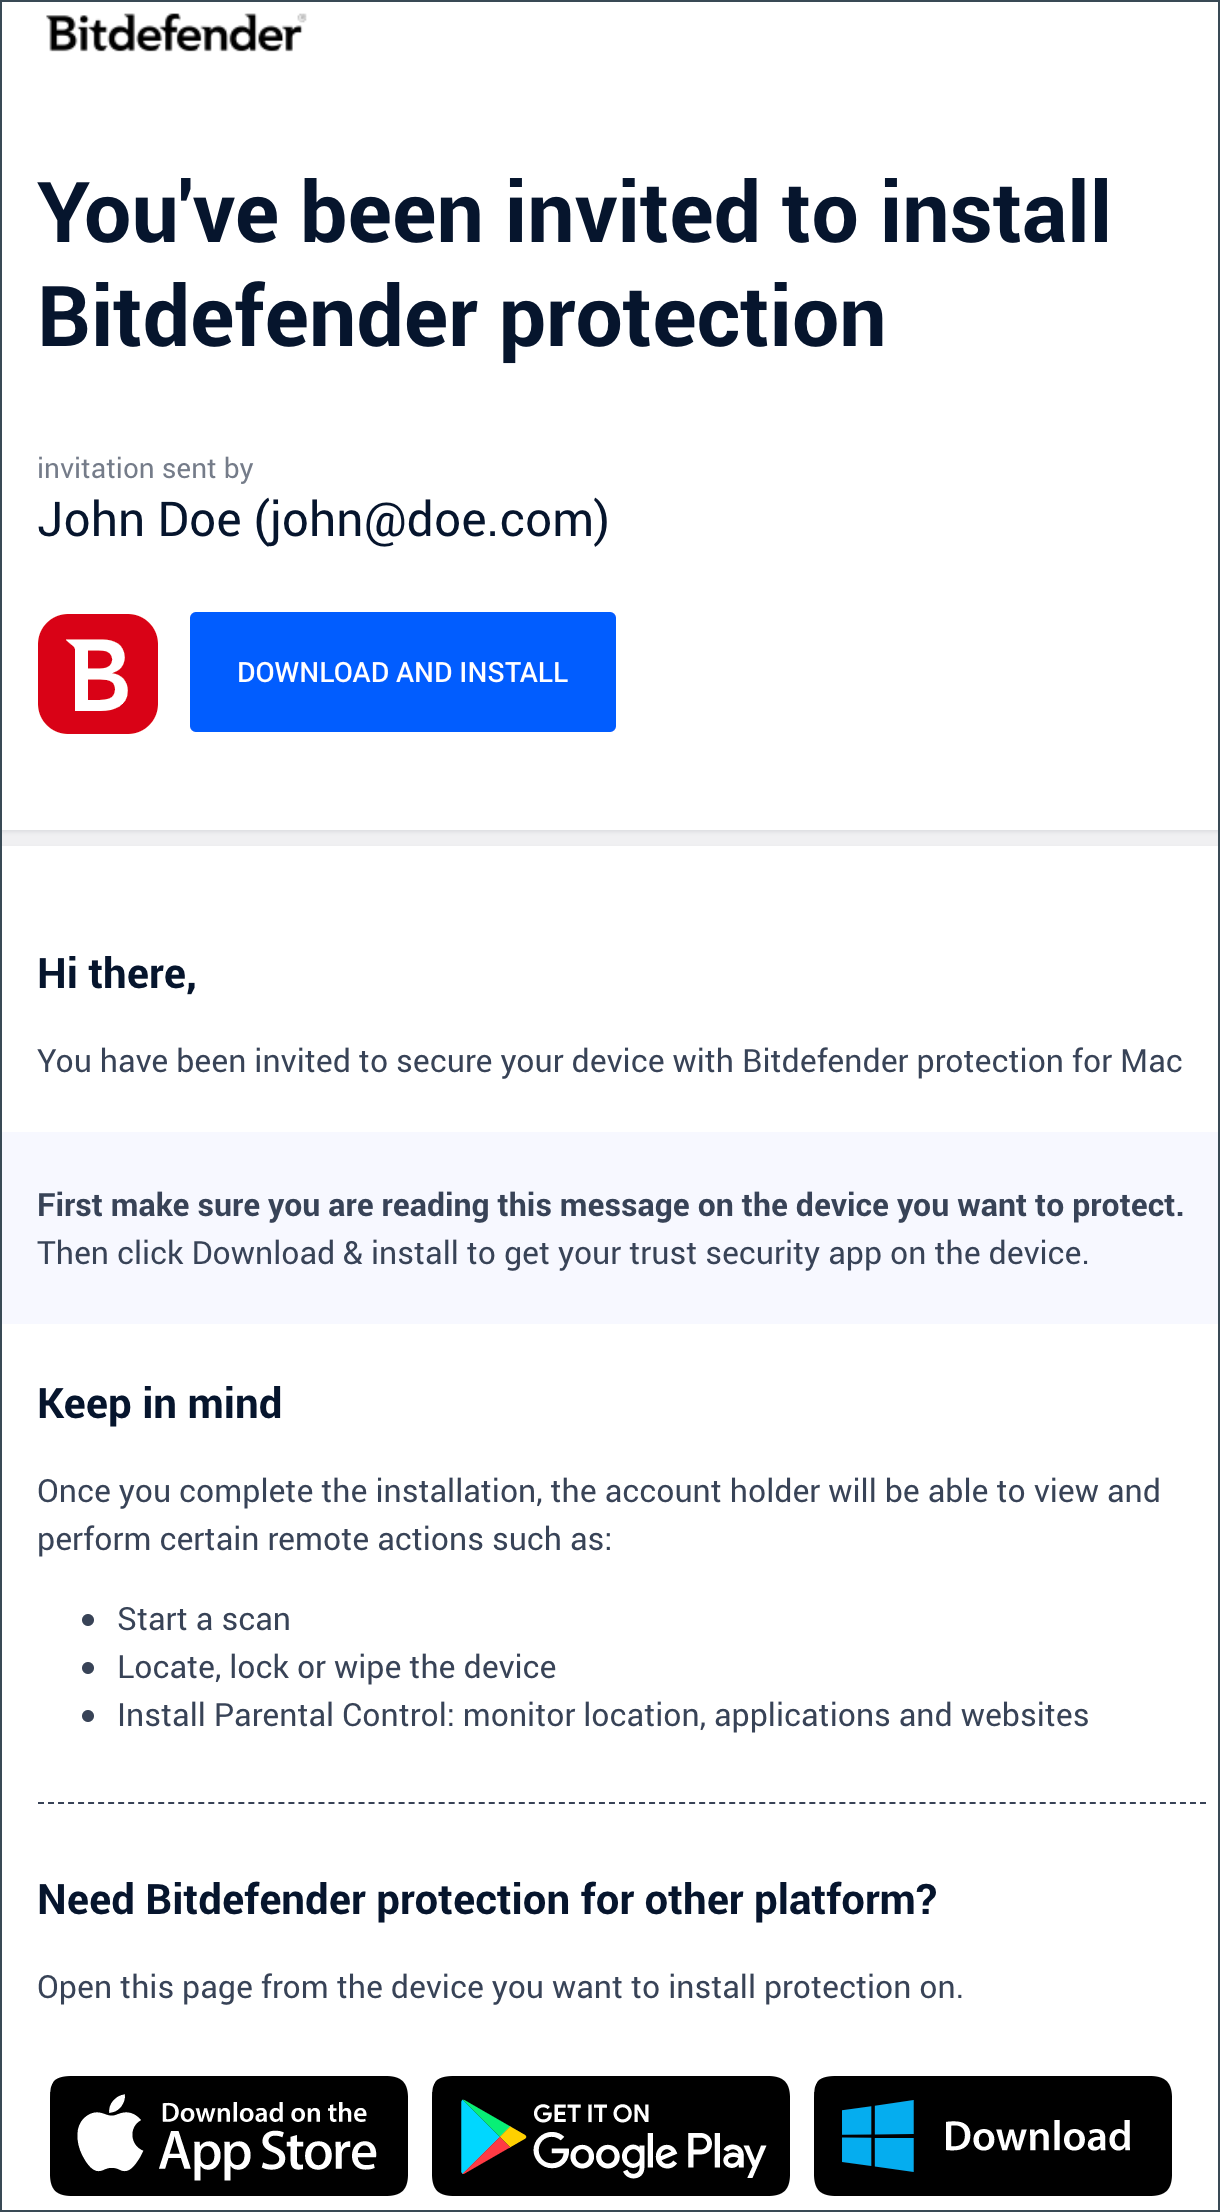 Uitnodiging per e-mail om Bitdefender op een ander apparaat te installeren